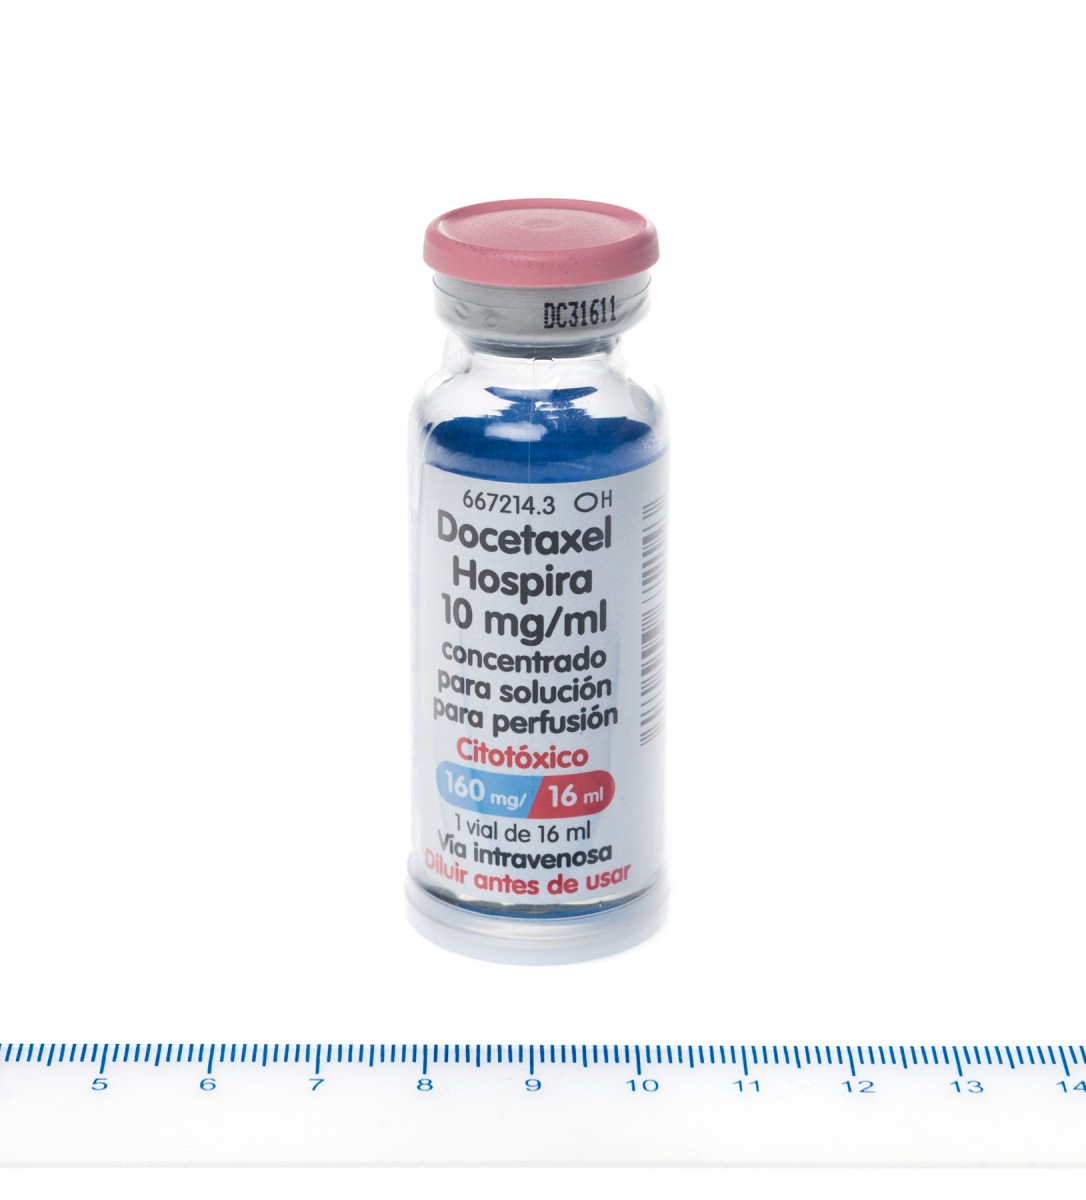 DOCETAXEL HOSPIRA 10 mg/ml CONCENTRADO PARA SOLUCION PARA PERFUSION, 1 vial de 8 ml fotografía de la forma farmacéutica.